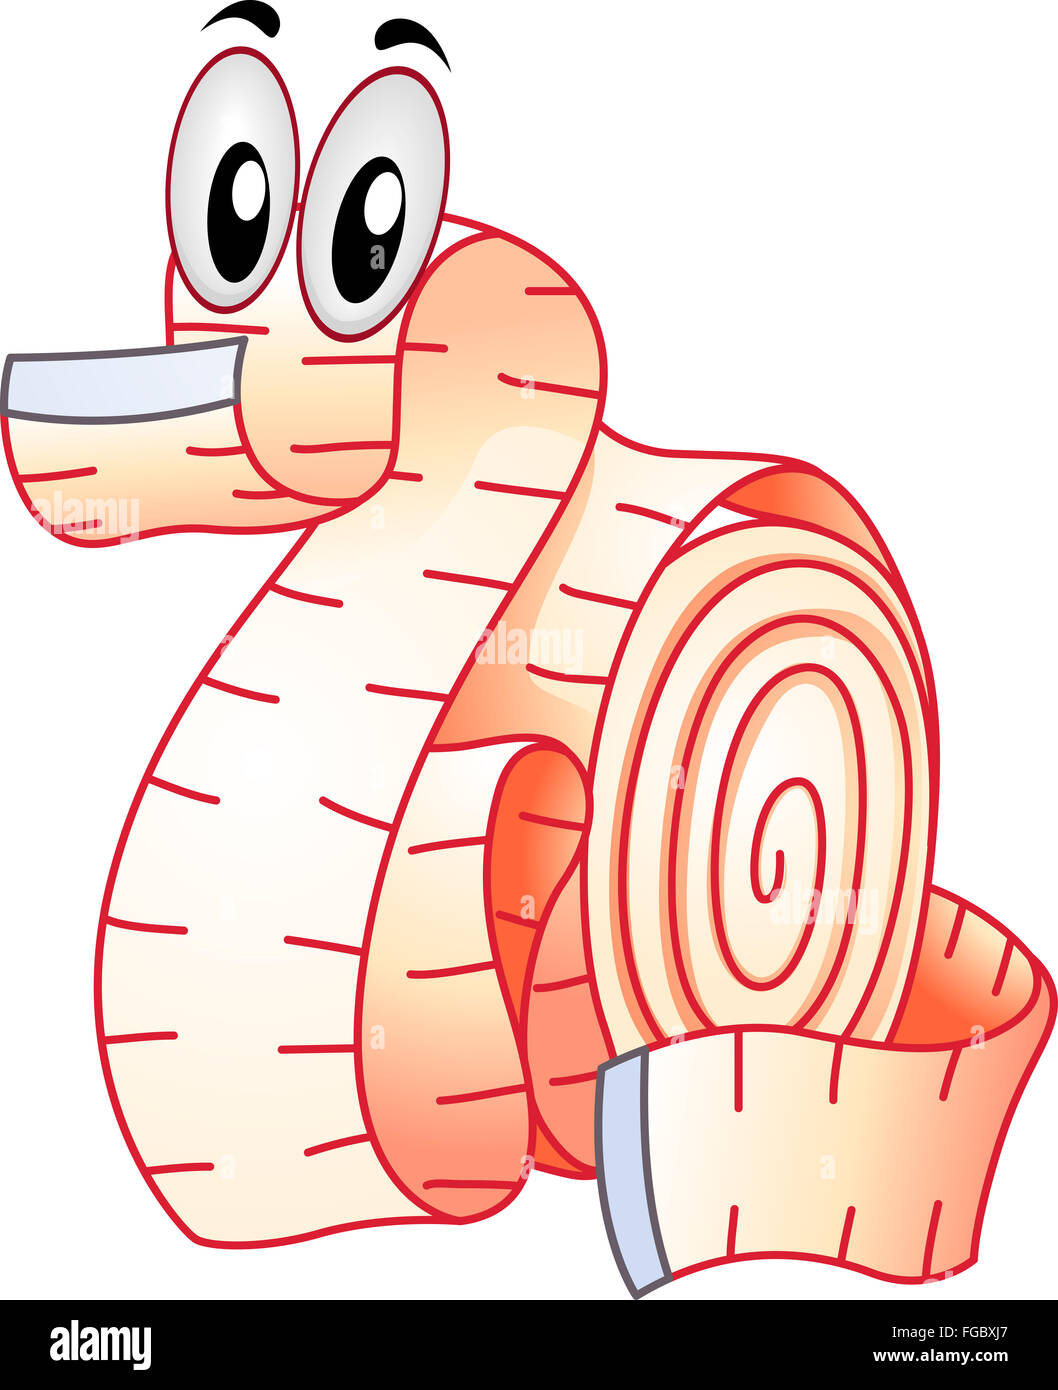 Mascot Illustration d'un mètre à ruban enroulé comme un dragon Banque D'Images